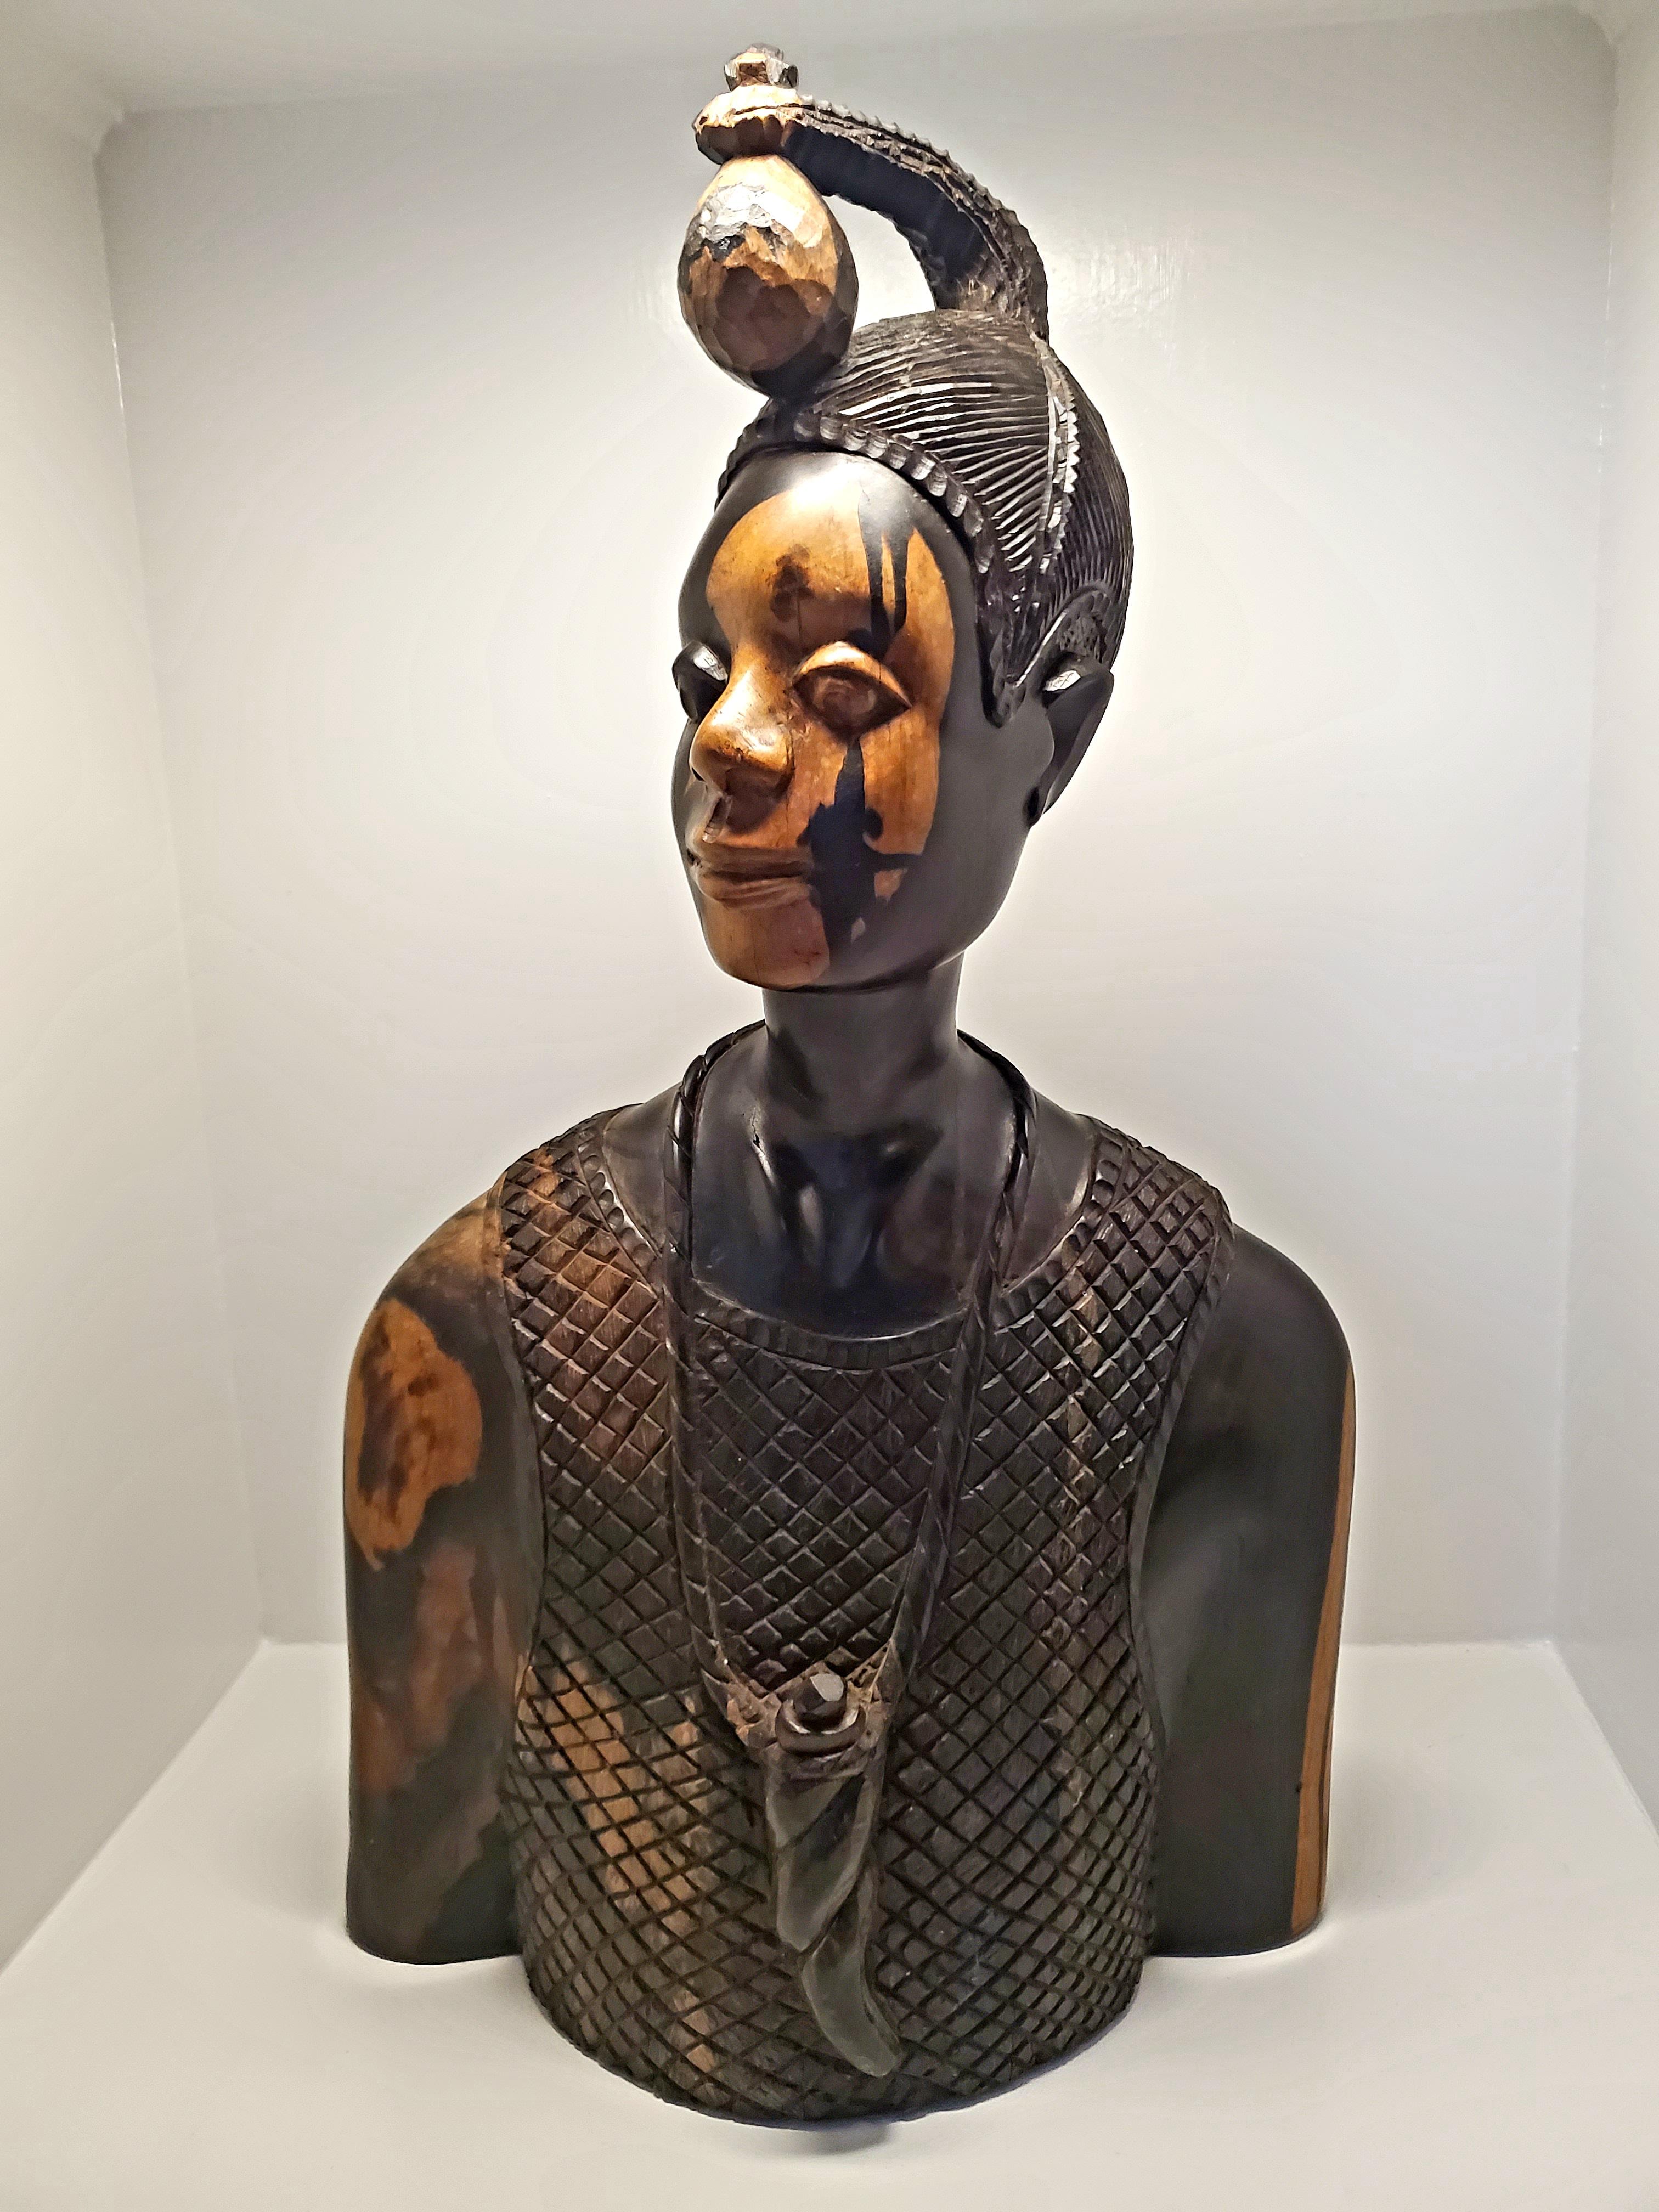 Ce buste magnifiquement sculpté par Felix Horn représente un homme nigérian vêtu d'un haut texturé sans manches et portant une gourde en forme de corne autour du cou. Ses cheveux sont coiffés d'un grand ornement dans le style suku traditionnel des